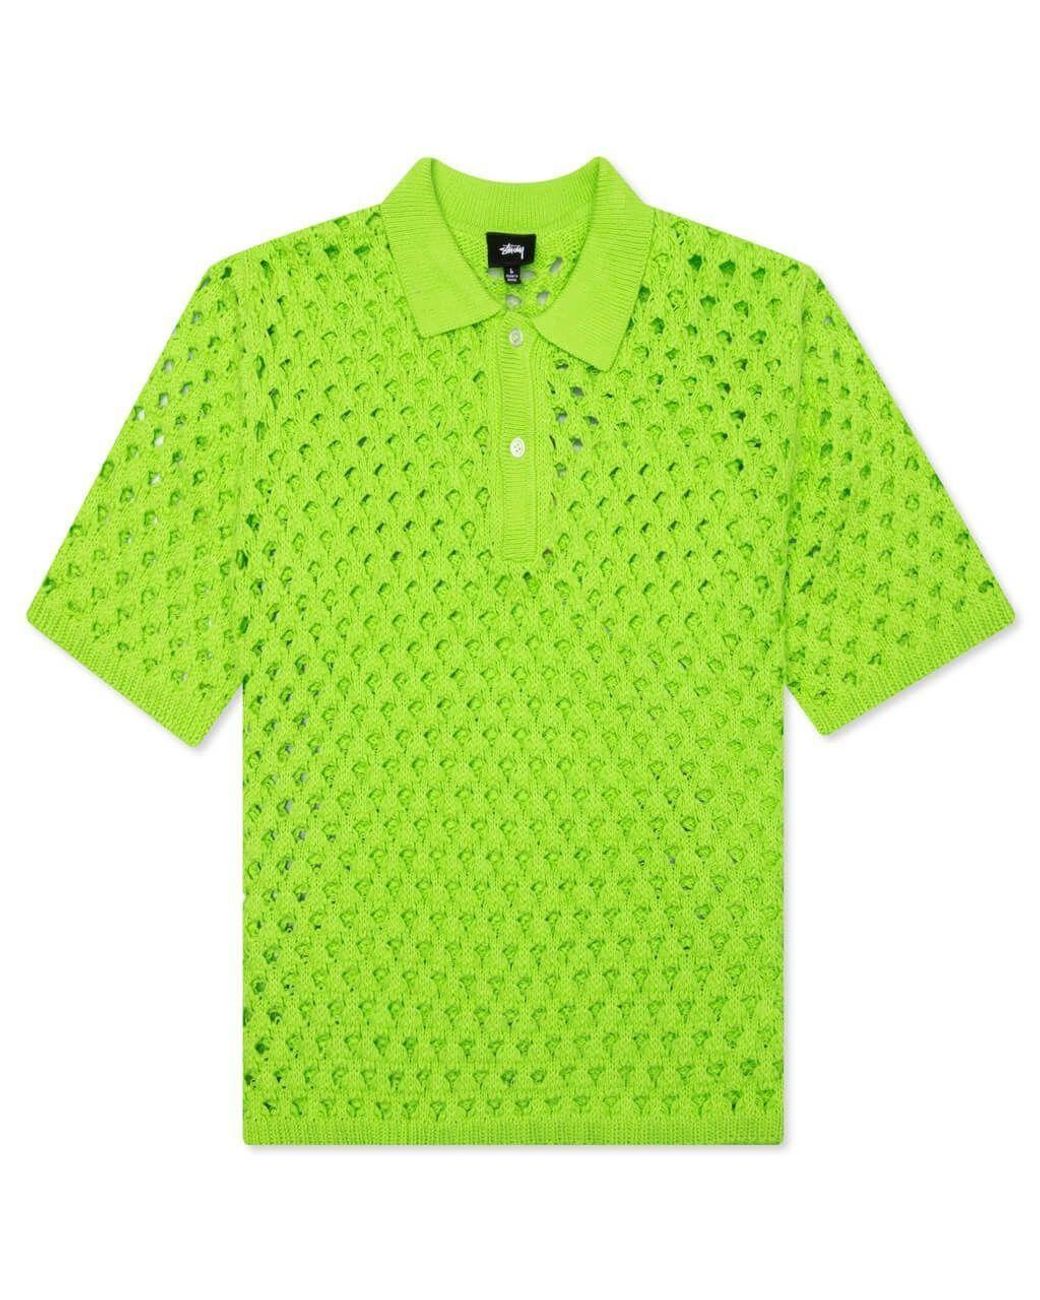 Stussy Tussy Jerseys & Knitwear in Green for Men